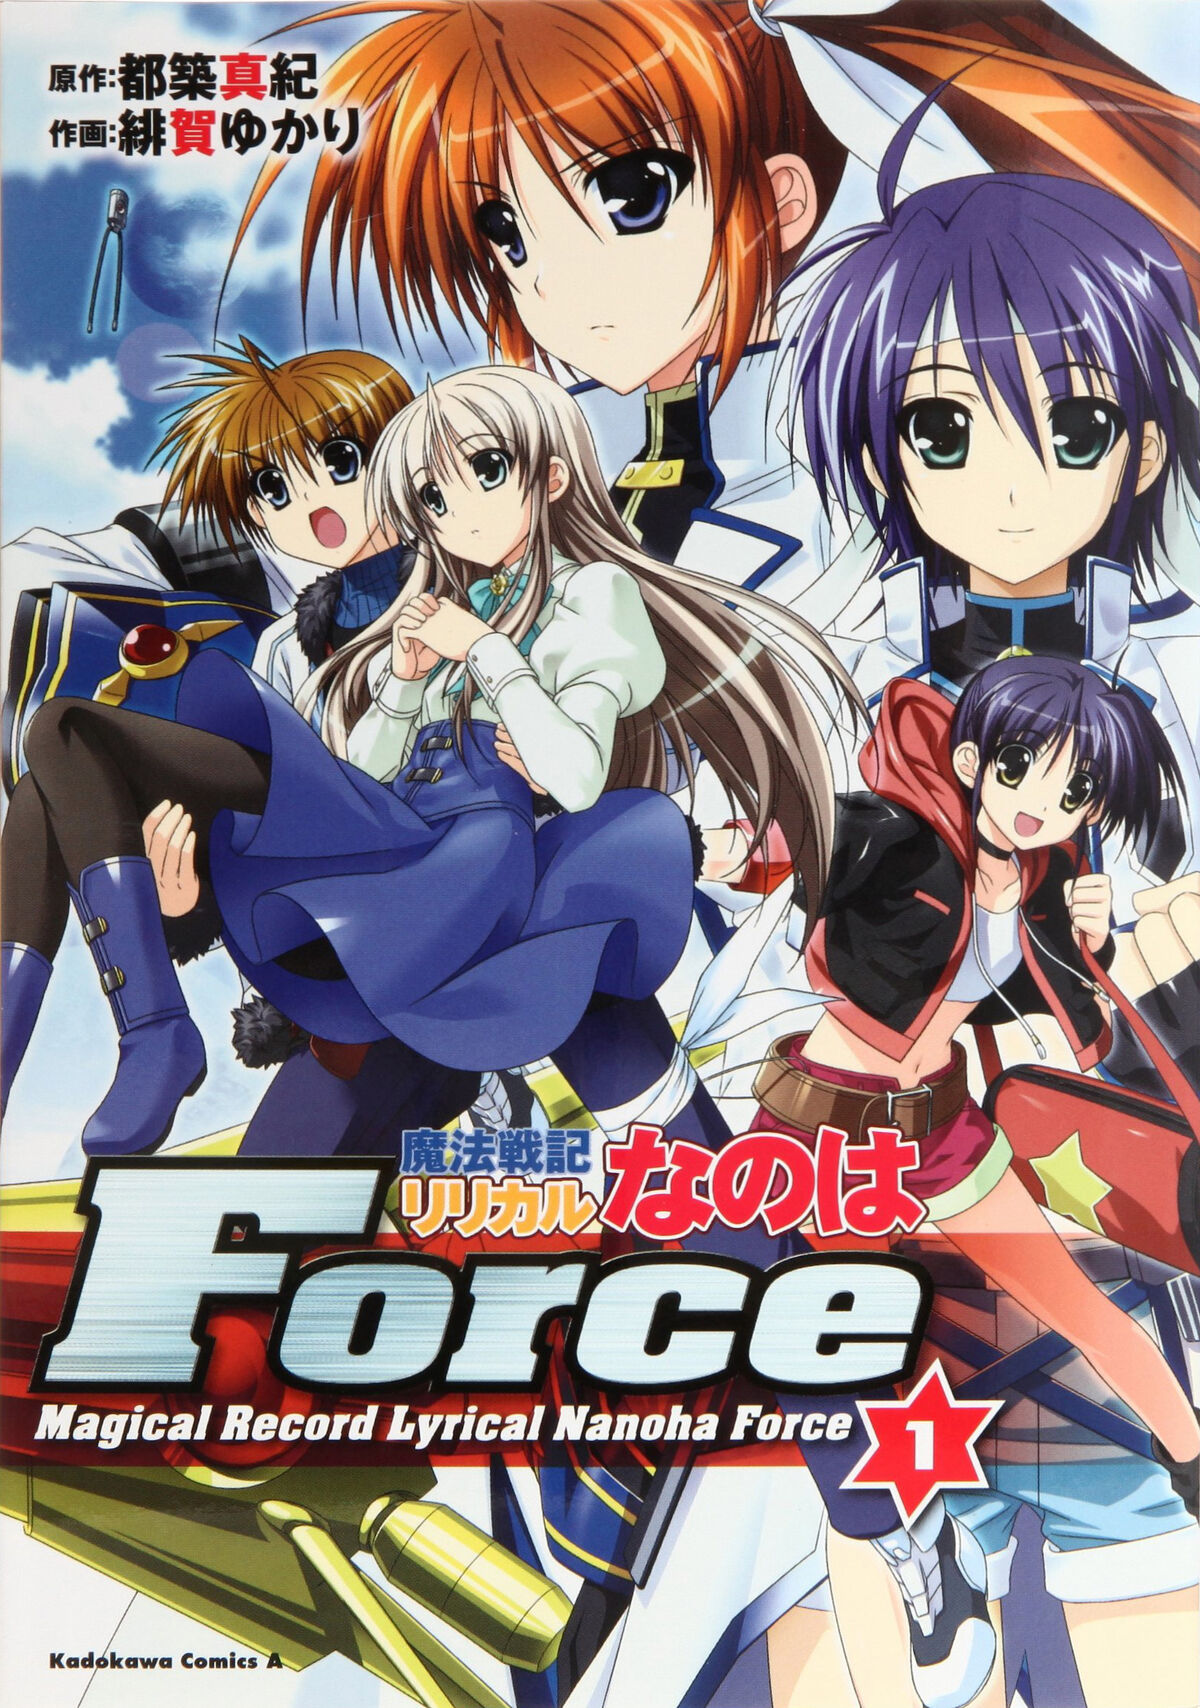 Magical Record Lyrical Nanoha Force | Magical Girl Lyrical Nanoha